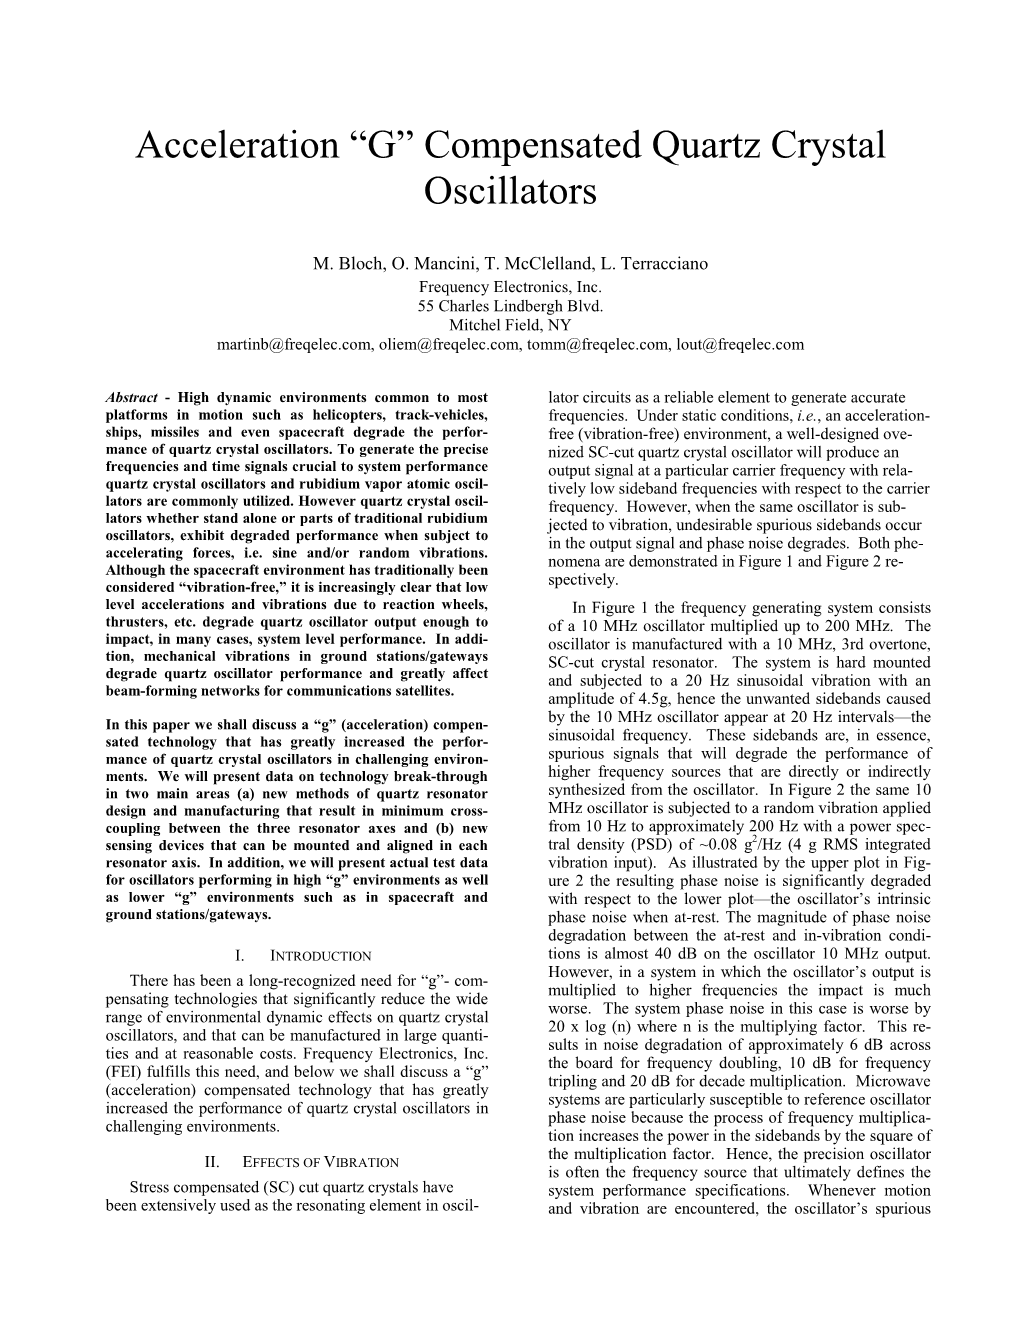 Acceleration “G” Compensated Quartz Crystal Oscillators